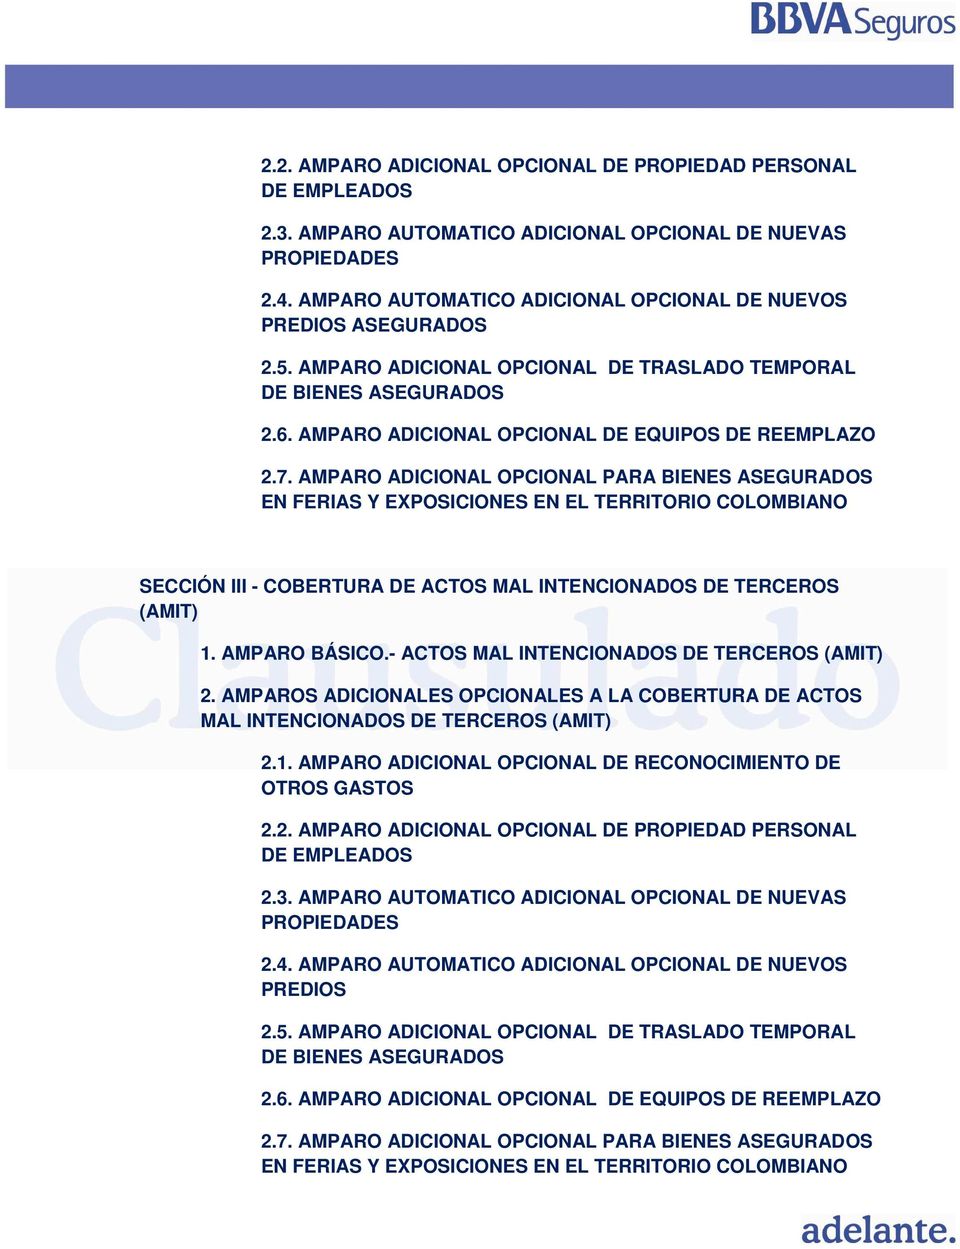 AMPARO ADICIONAL OPCIONAL PARA BIENES ASEGURADOS EN FERIAS Y EXPOSICIONES EN EL TERRITORIO COLOMBIANO SECCIÓN III - COBERTURA DE ACTOS MAL INTENCIONADOS DE TERCEROS (AMIT) 1. AMPARO BÁSICO.